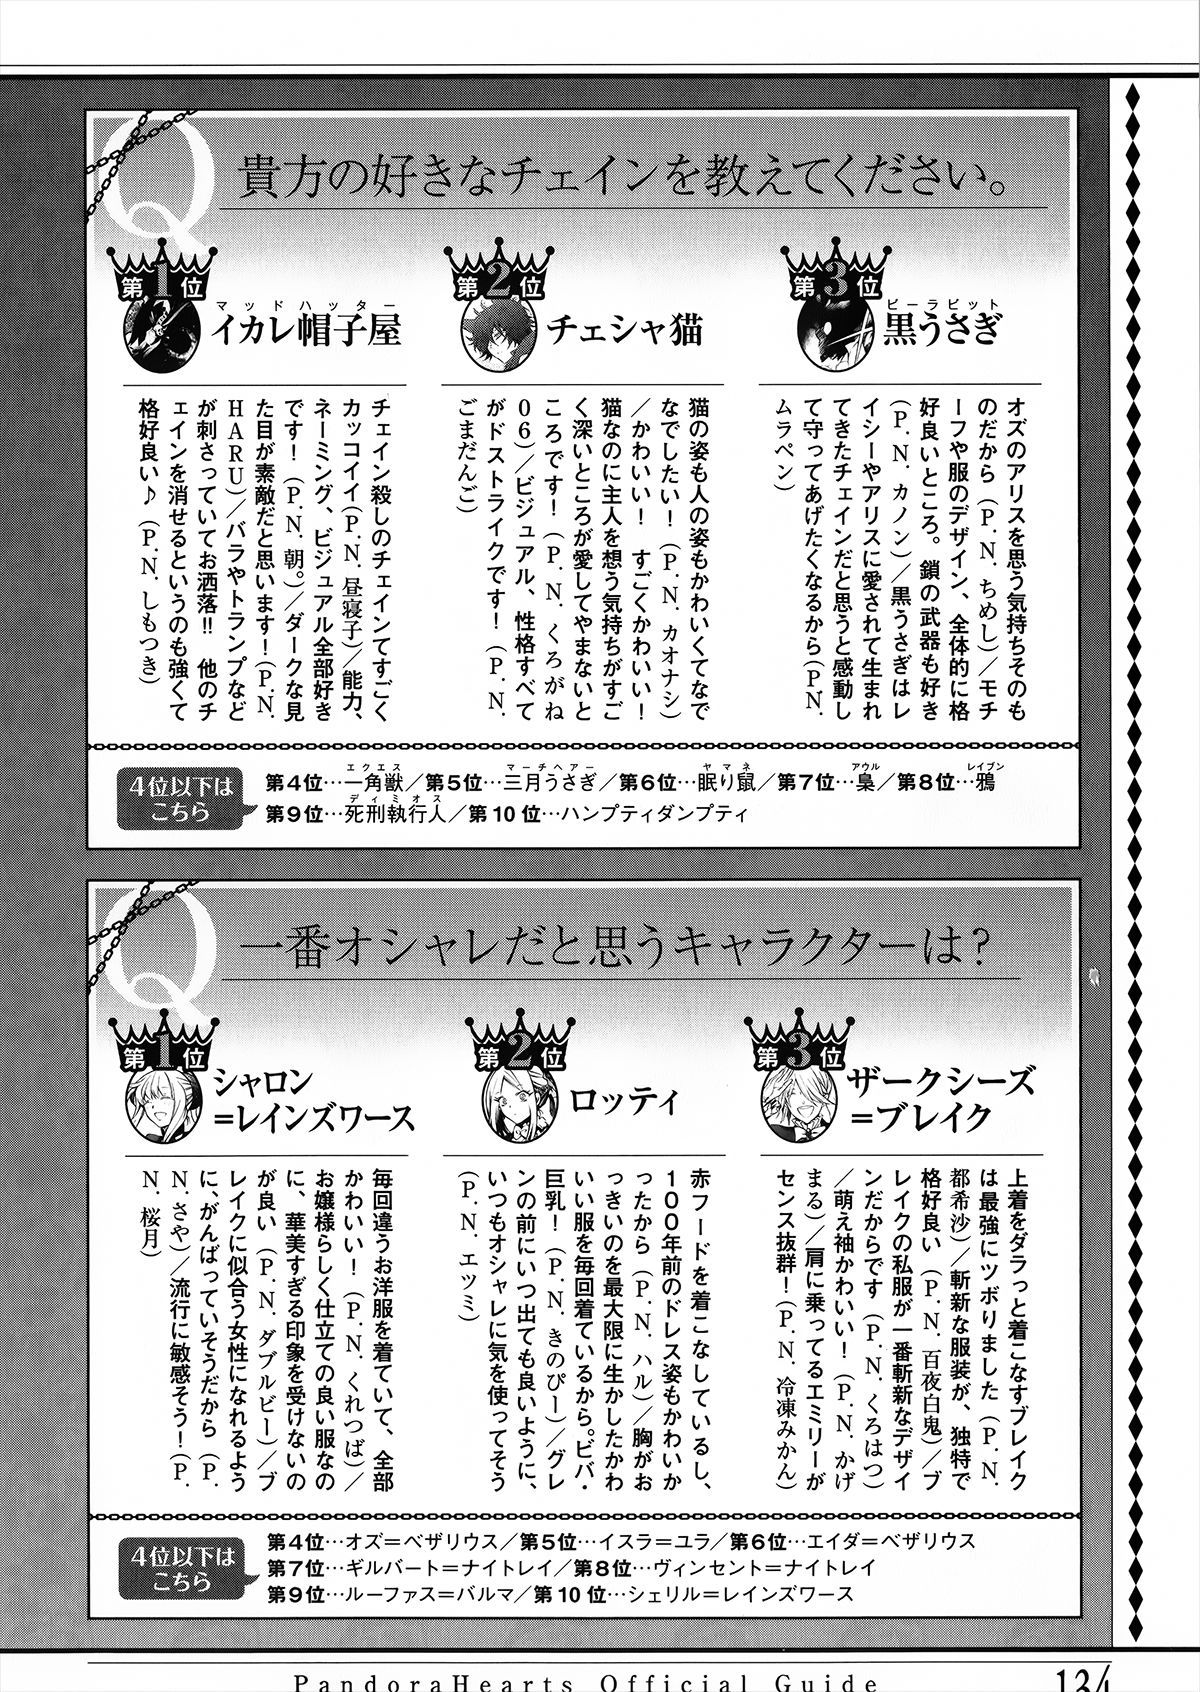 Pandora Hearts Guidebook 24+1: Last Dance パンドラハーツ オフィシャルガイド 24 + 1 ~Last Dance! 138